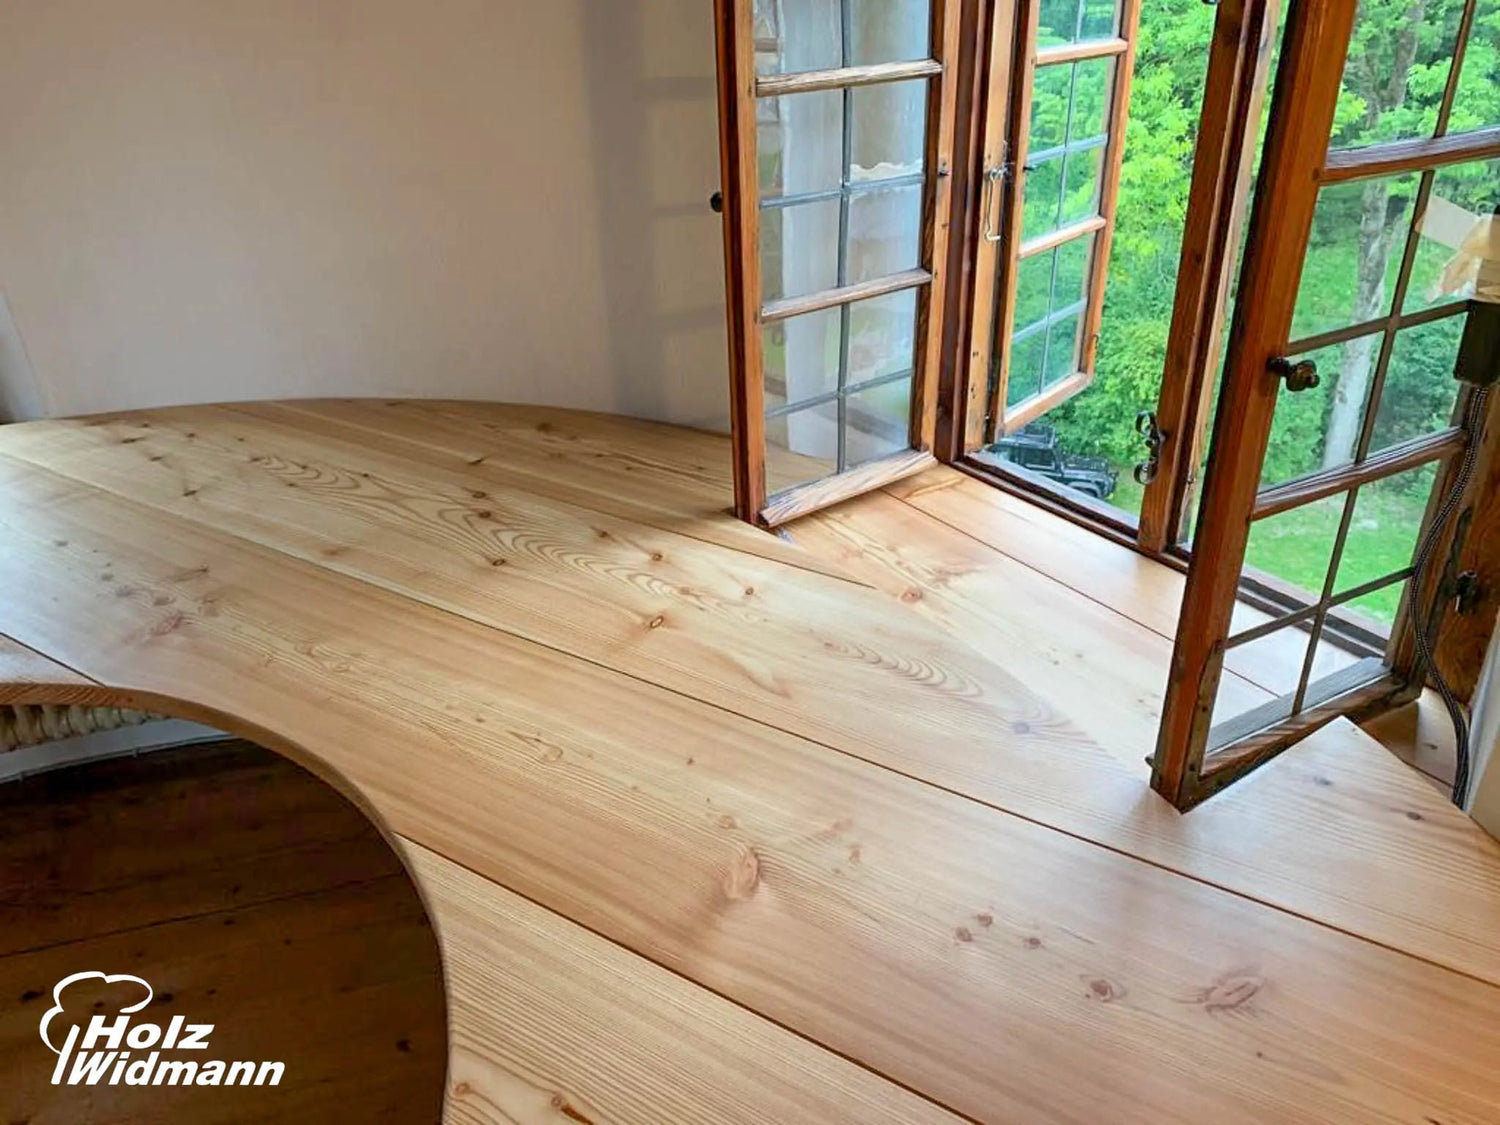 Lärche Möbel: Natürlich schöne Einrichtung für Innenräume - Holz Widmann - Meine Holzhandlung - Holz kaufen München